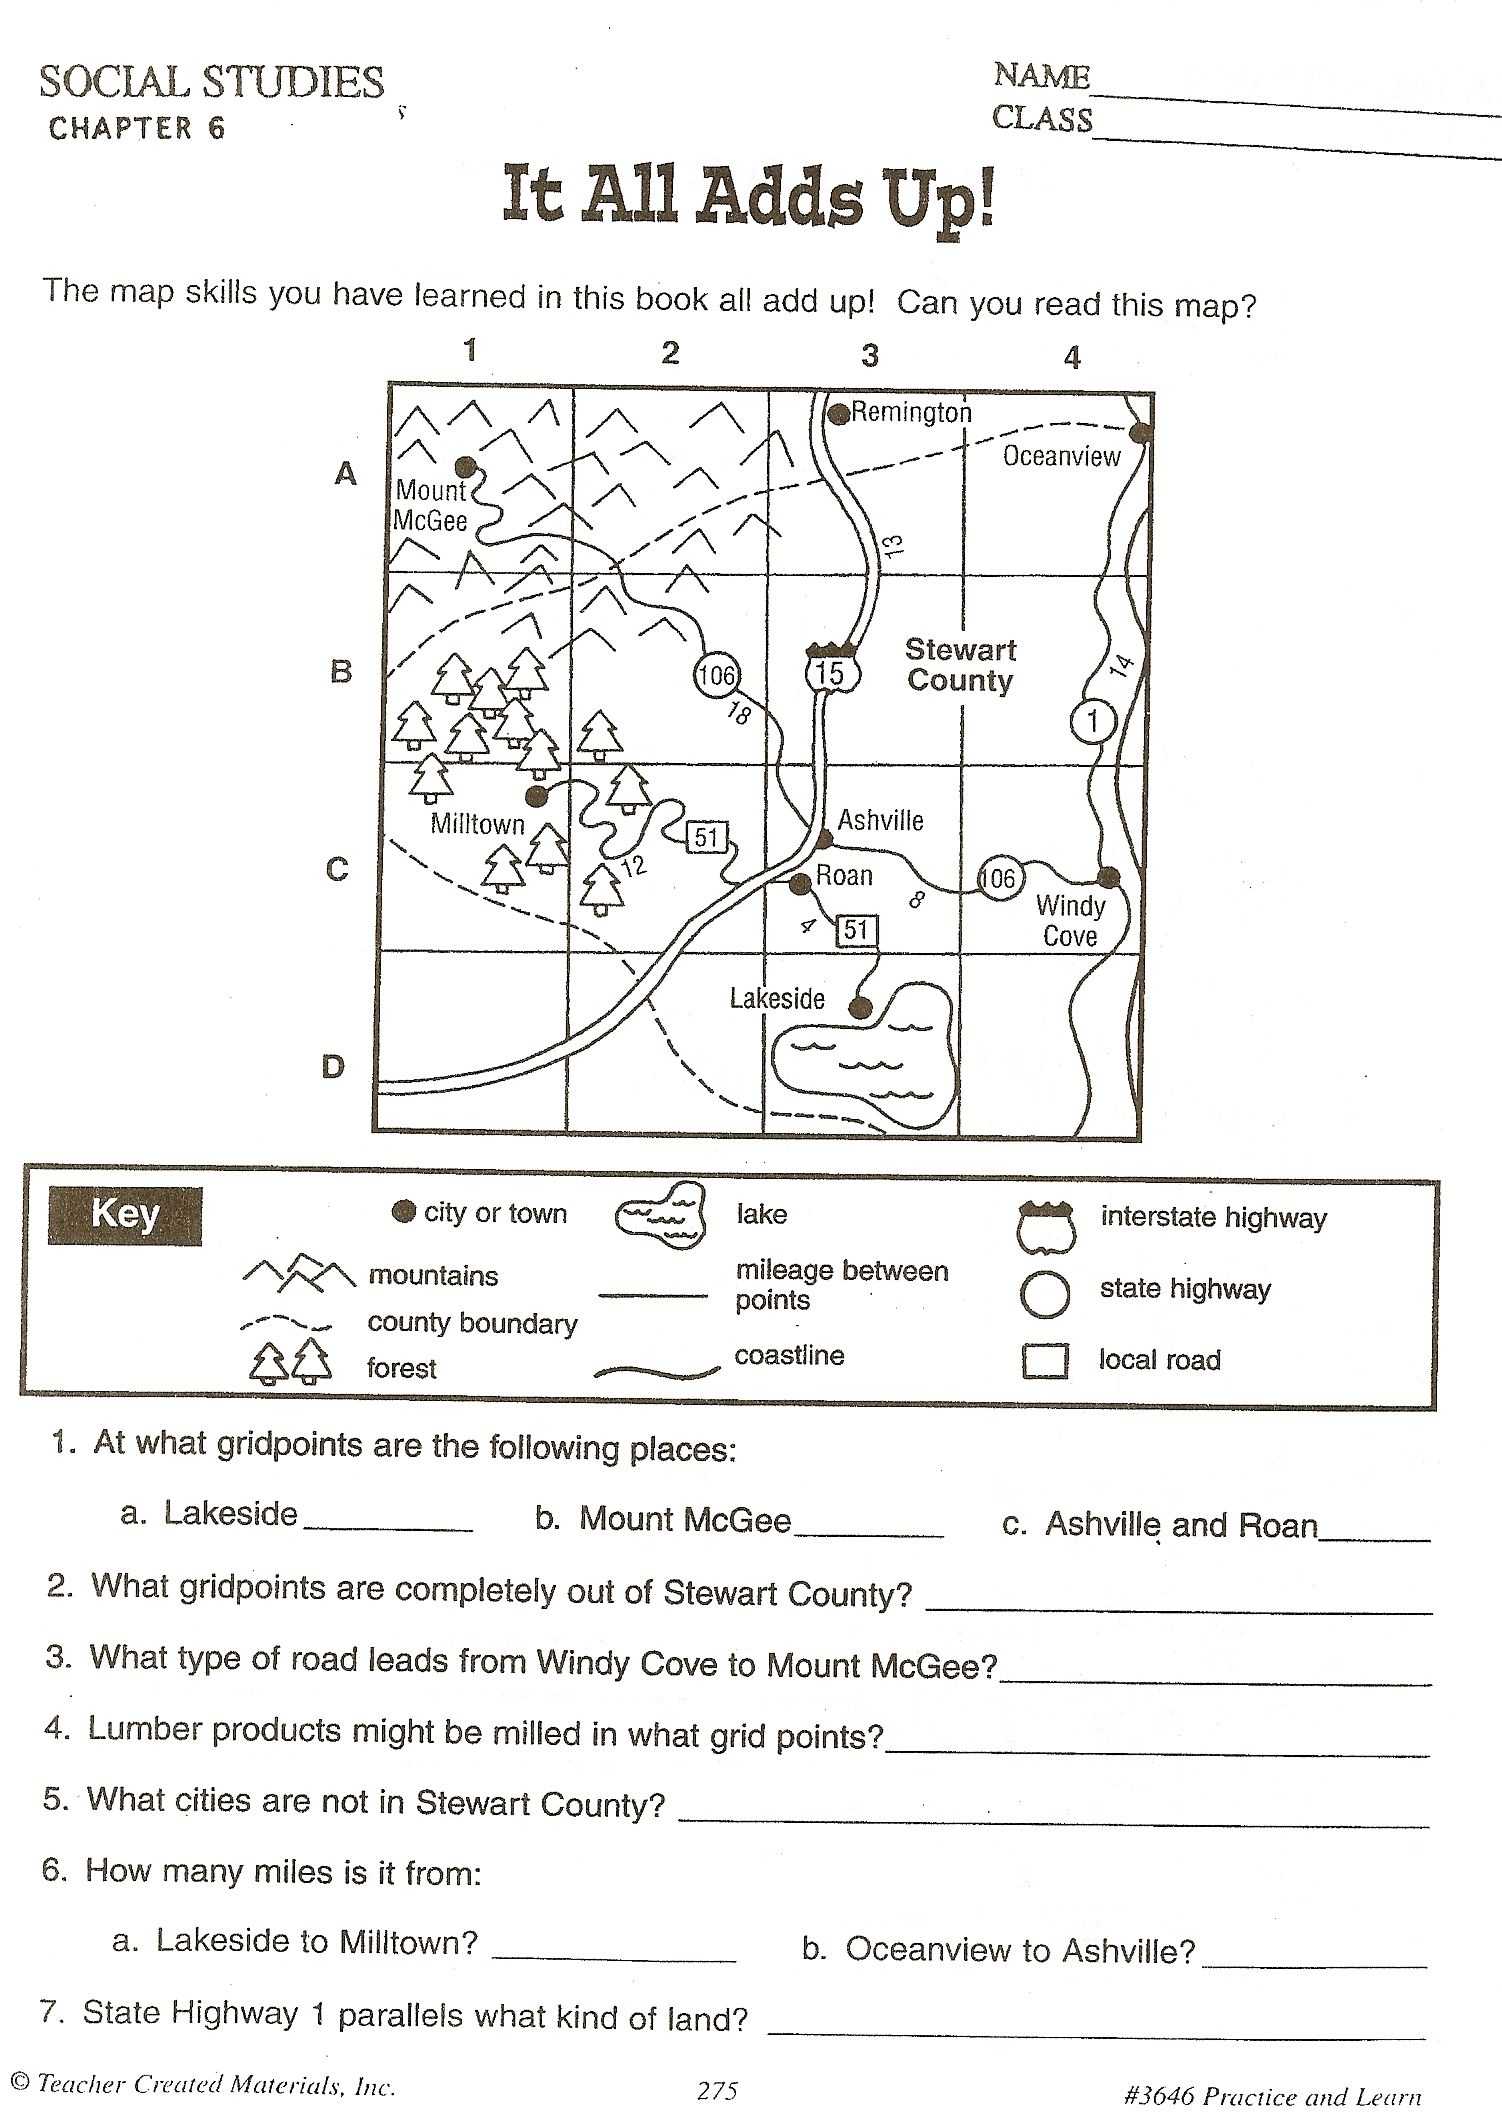 Free Printable Ged Worksheets with Kids social Stu S Grade 1 Worksheets Kindergarten Best